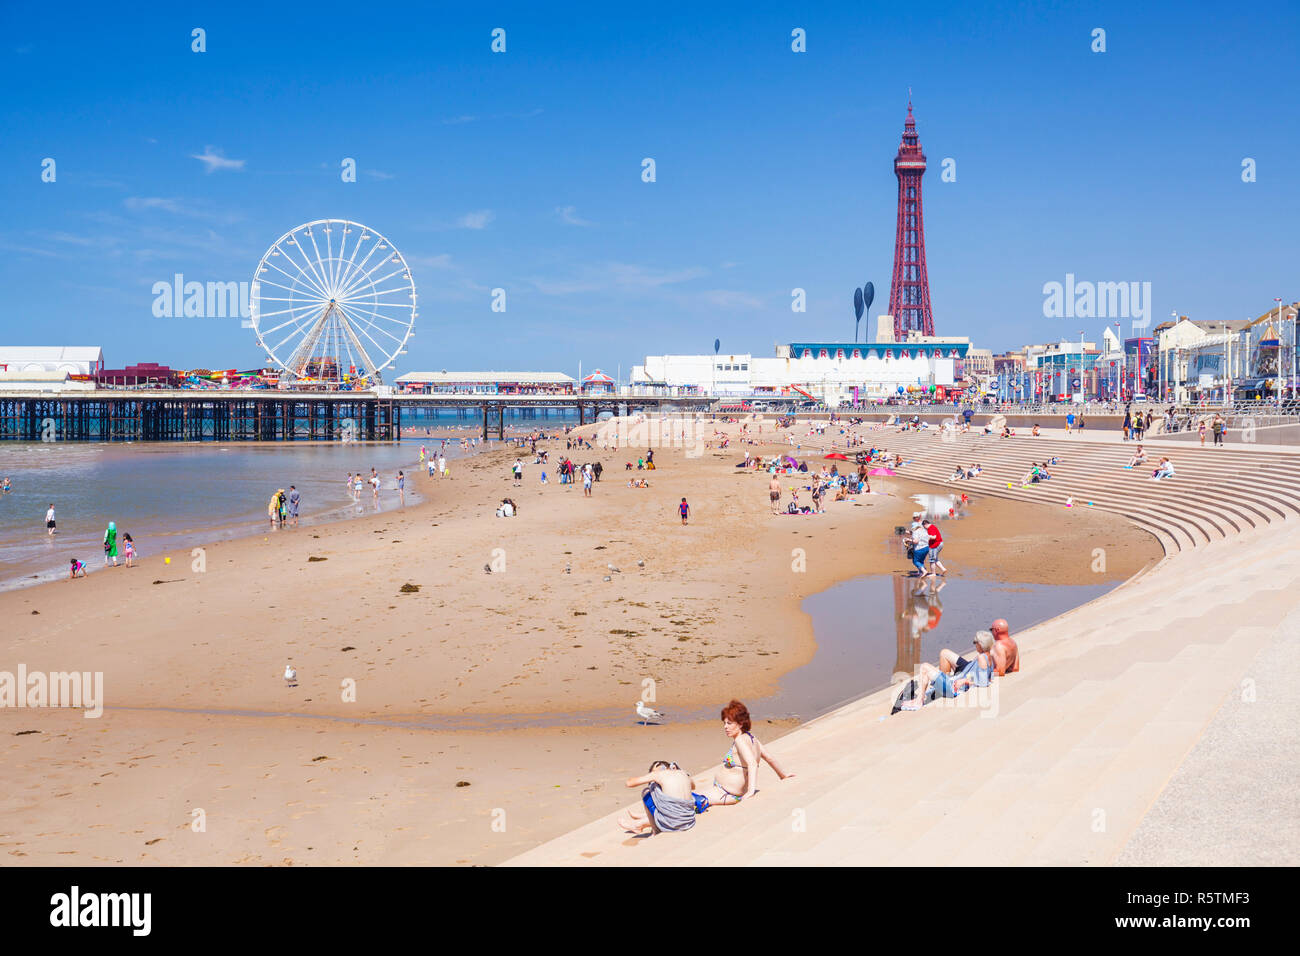 La gente en la playa en verano con la playa de Blackpool Blackpool Tower central Pier y el paseo marítimo de Blackpool Lancashire Inglaterra GB Europa Foto de stock